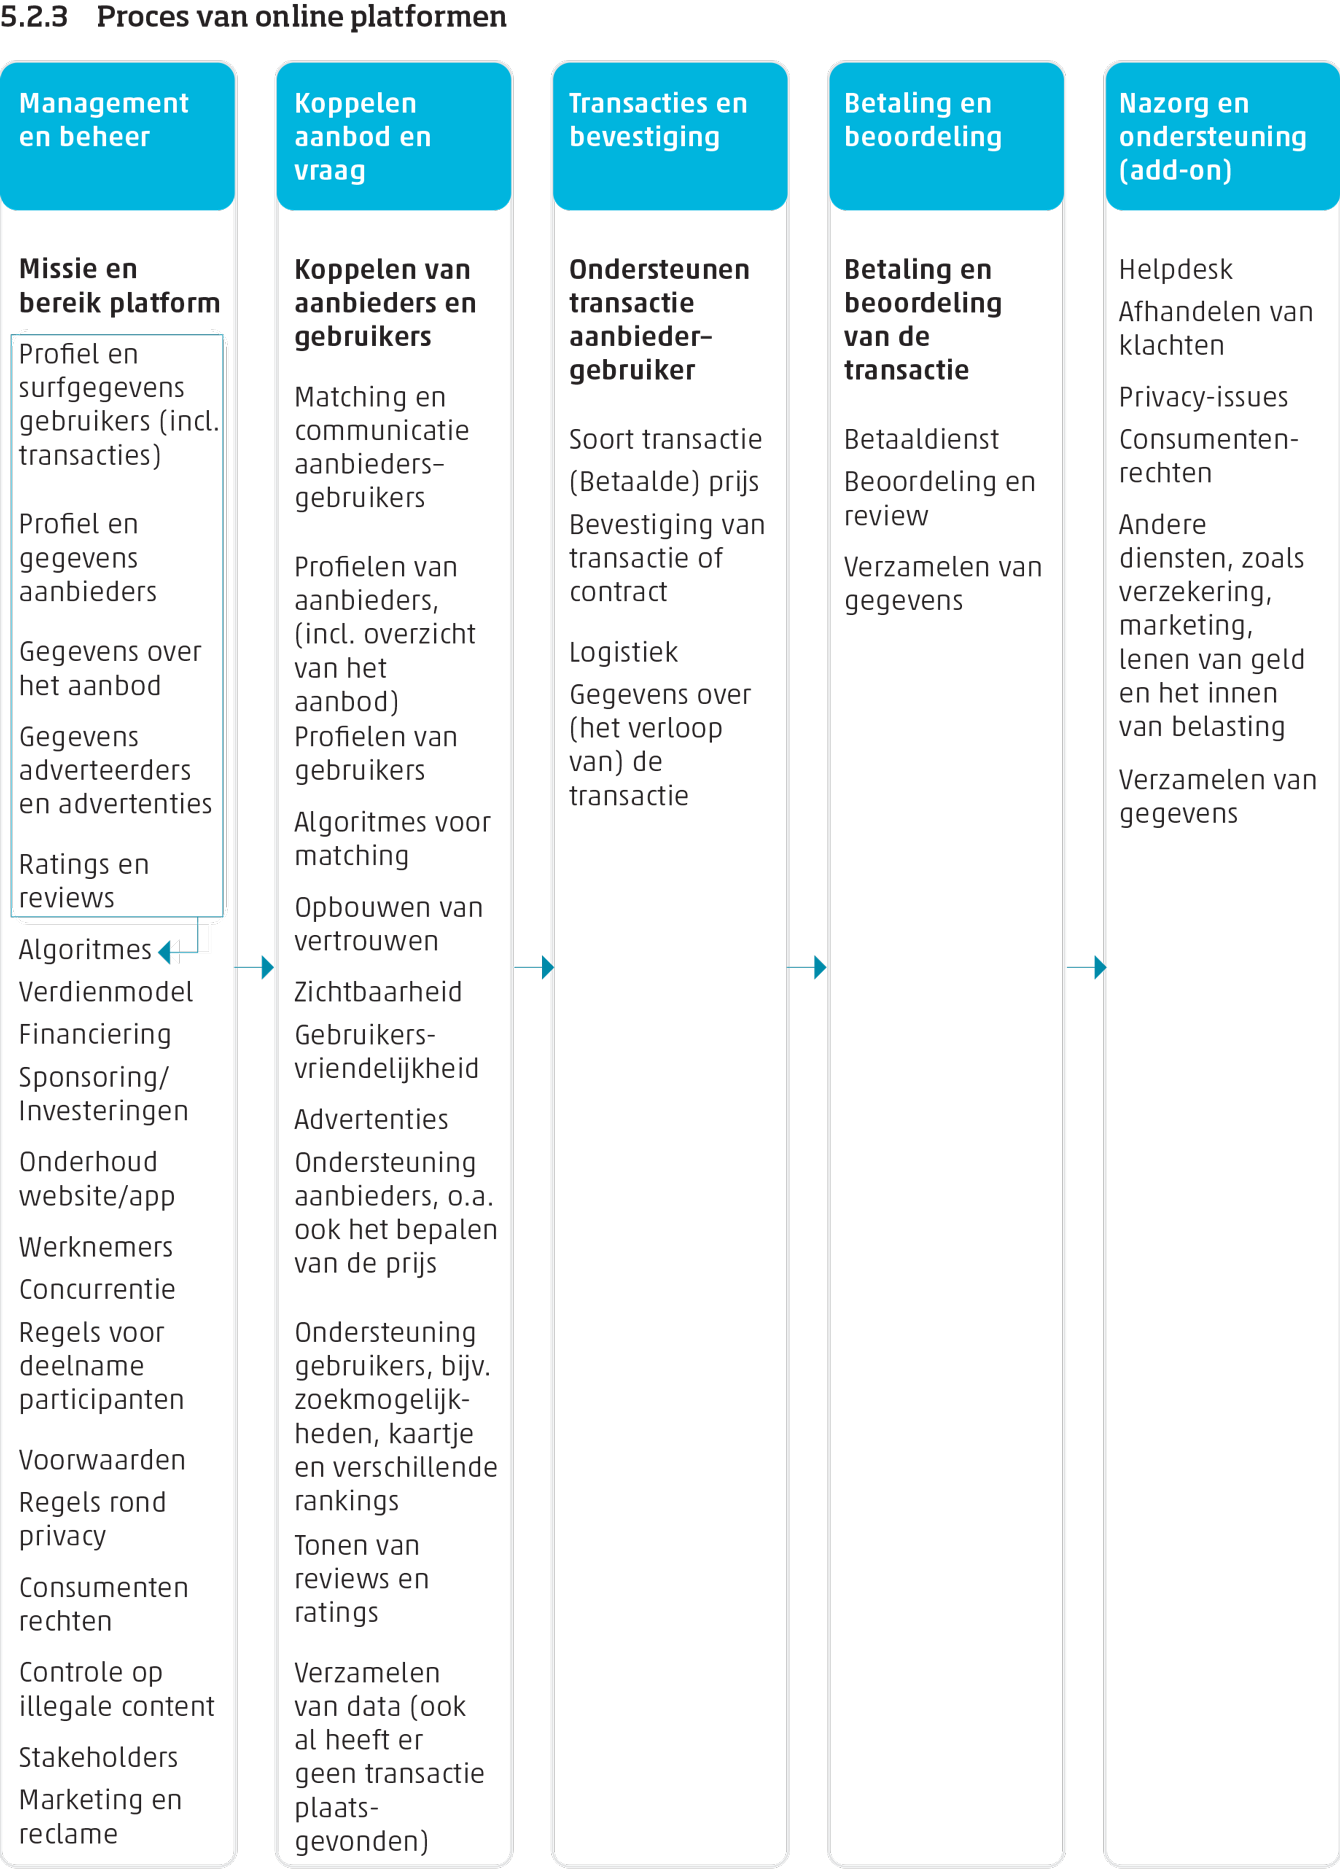 Schematische weergave van het proces van online platformen. Hierin worden de verschillende rollen en taken van het platform afgebeeld.